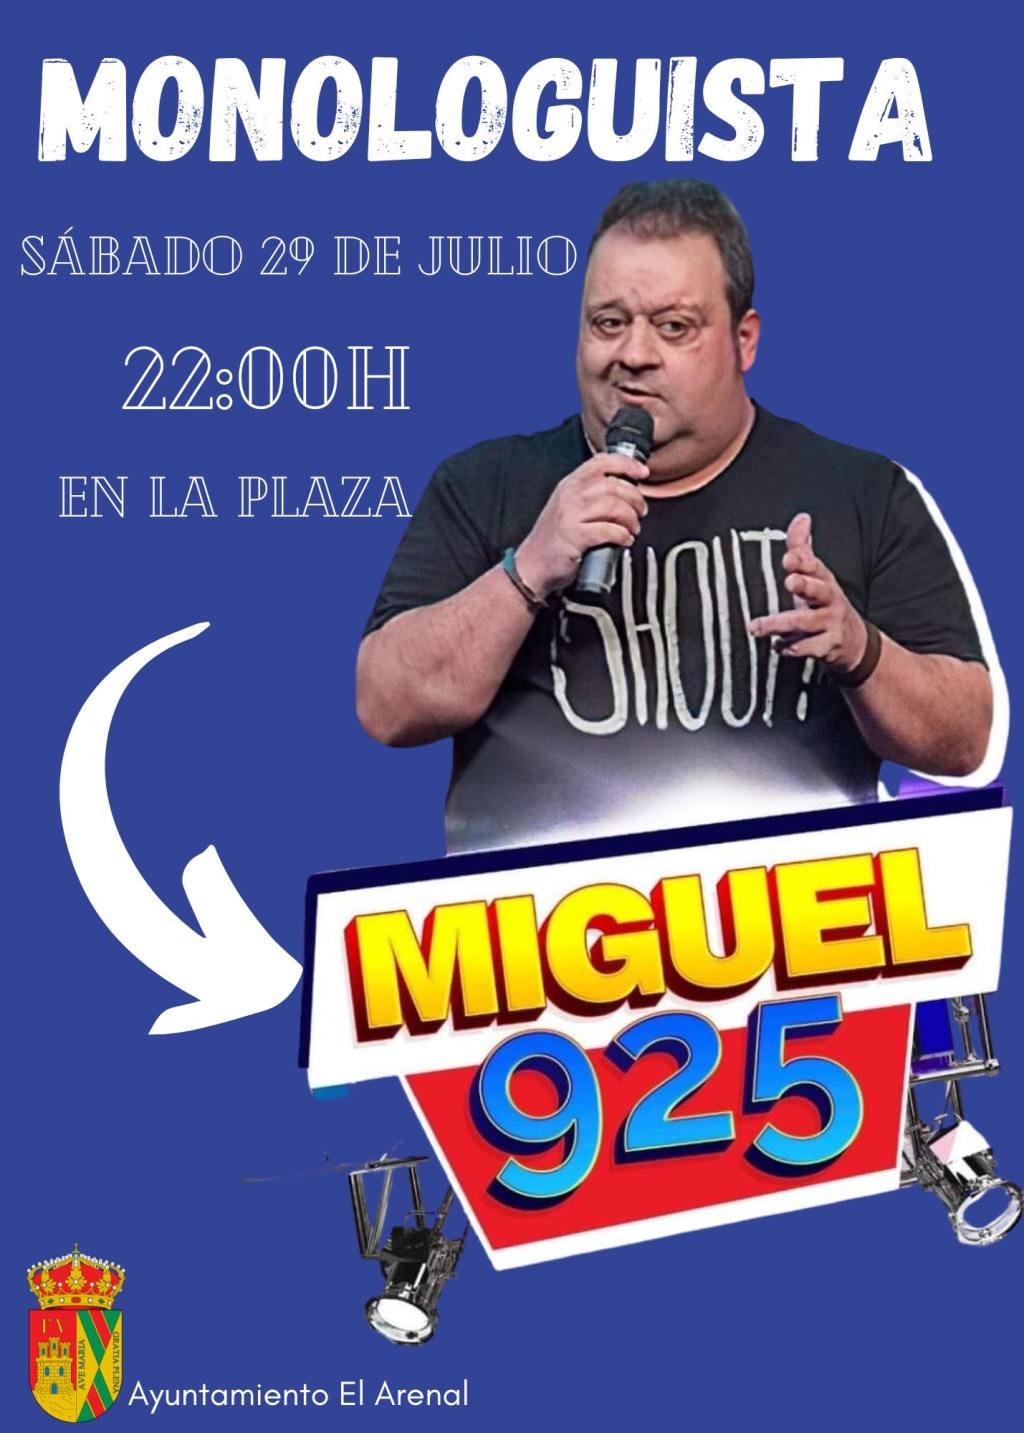 Monologuista «Miguel 925» en El Arenal